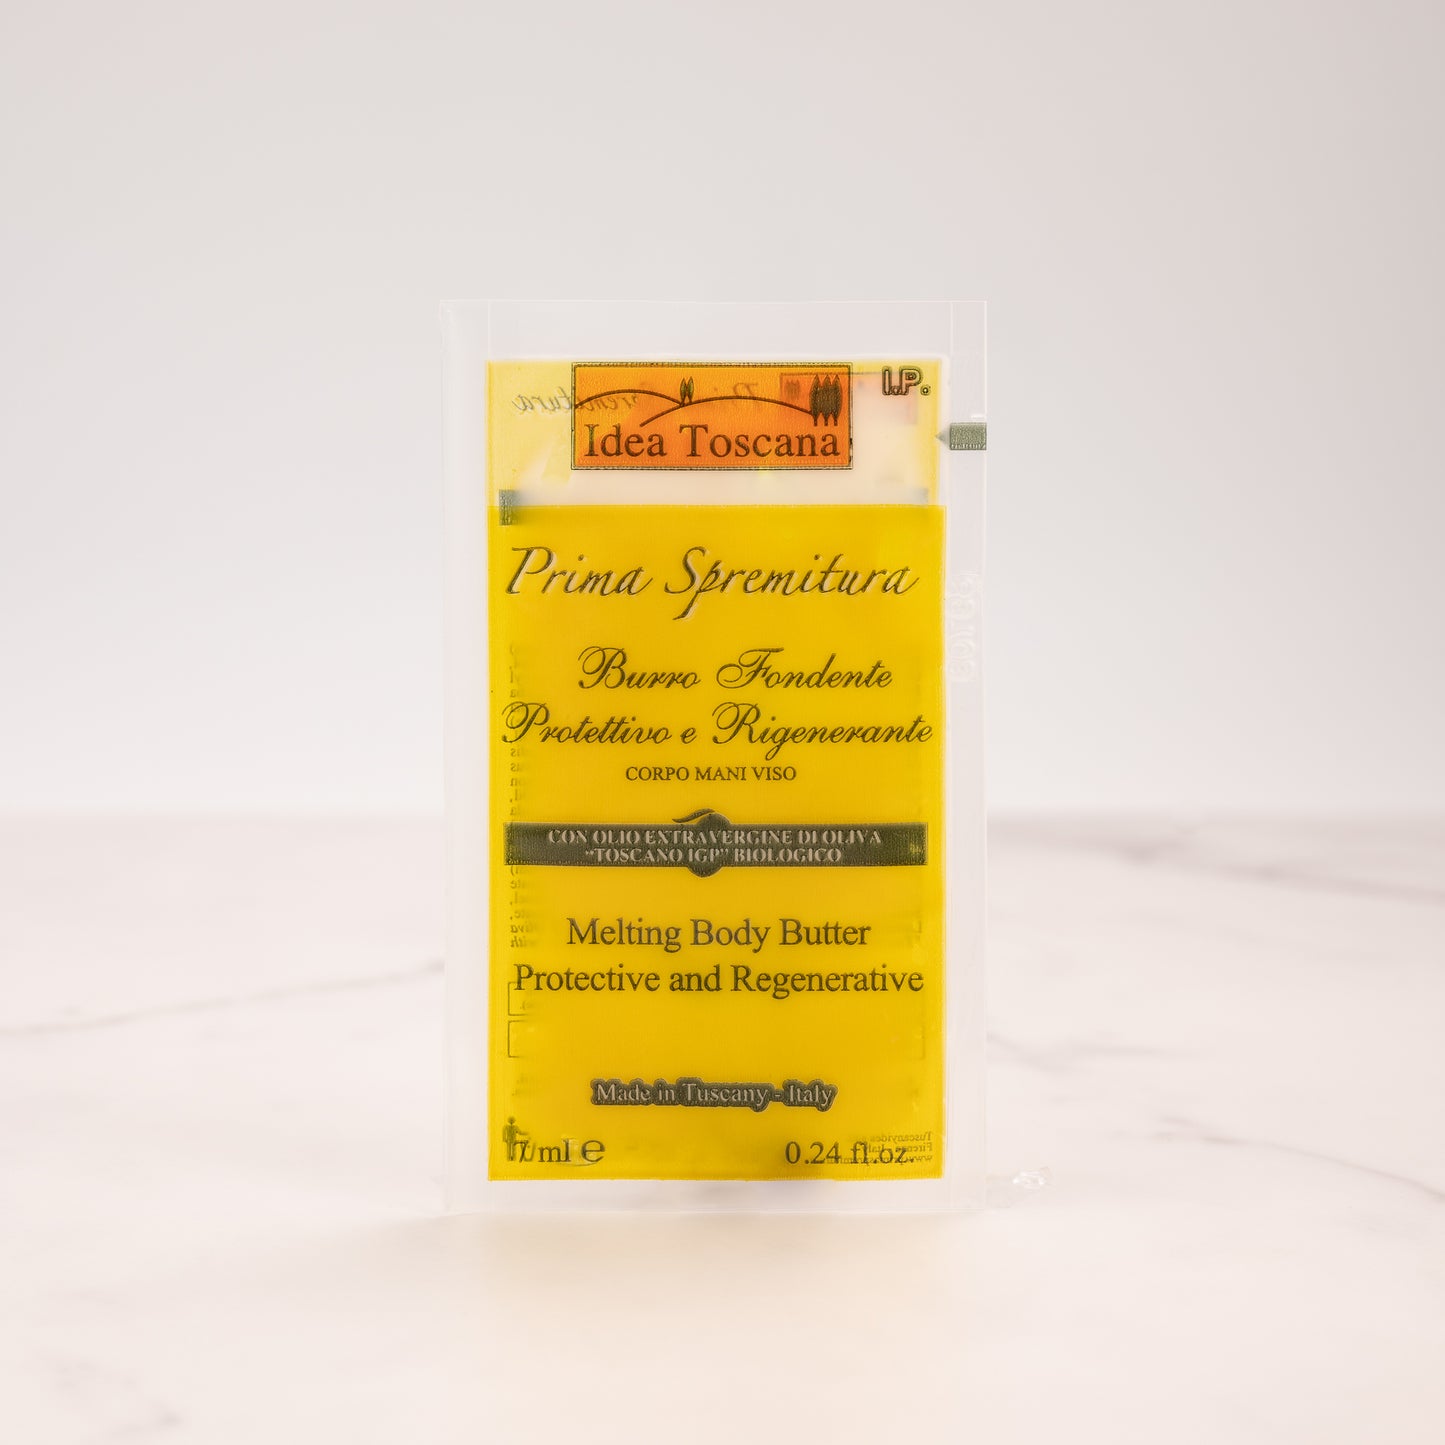 Schmelzende Butter für Körper, Hände, Gesicht vor Spremitura, Beutel 7 ml – Idea Toscana